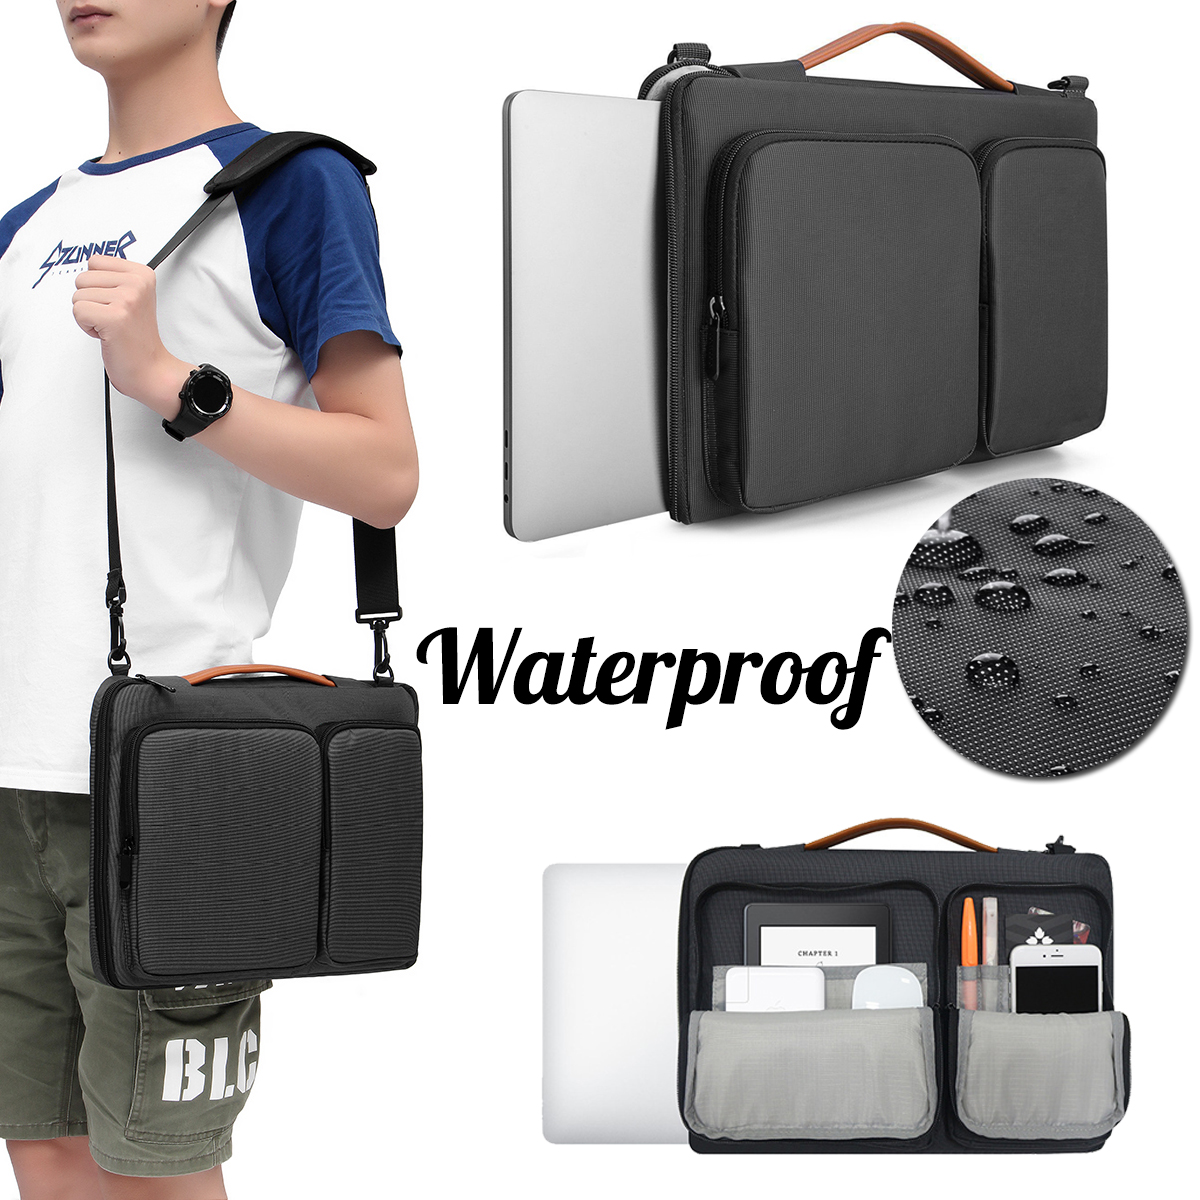 14-Inch-Laptop-Notebook-Bag-Messenger-Bag-Travel-Bag-Shoulder-Bag-1387456